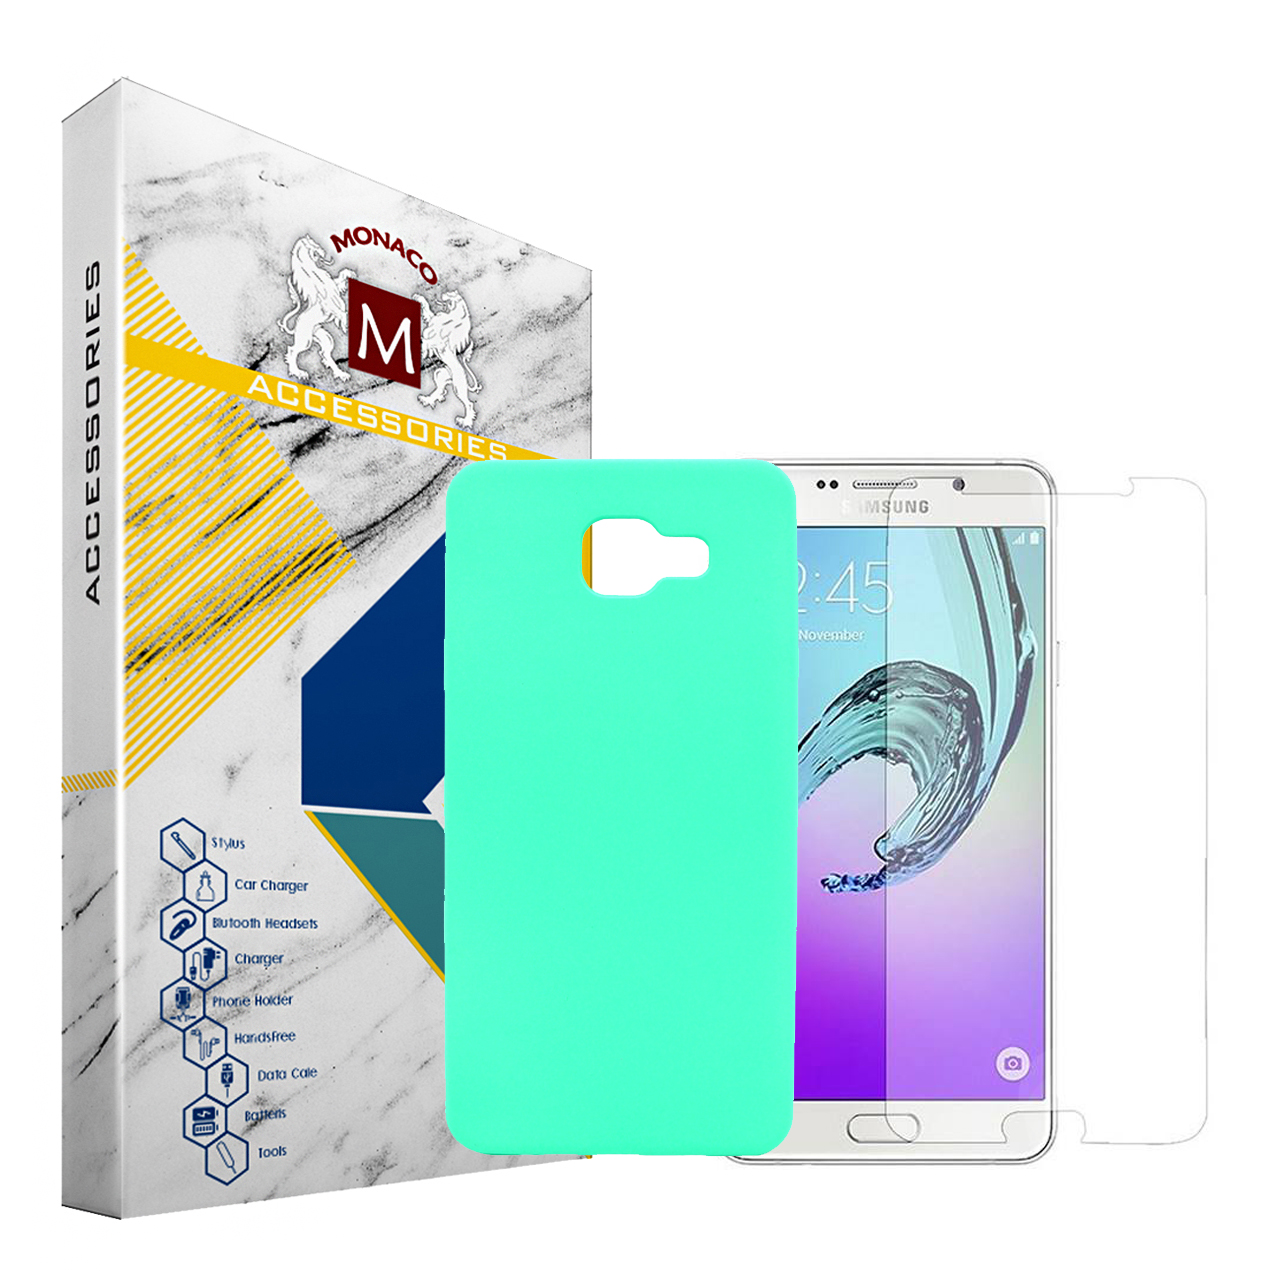 کاور موناکو مدل Sn024 مناسب برای گوشی موبایل سامسونگ Galaxy A7 2016 / A710 به همراه محافظ صفحه نمایش